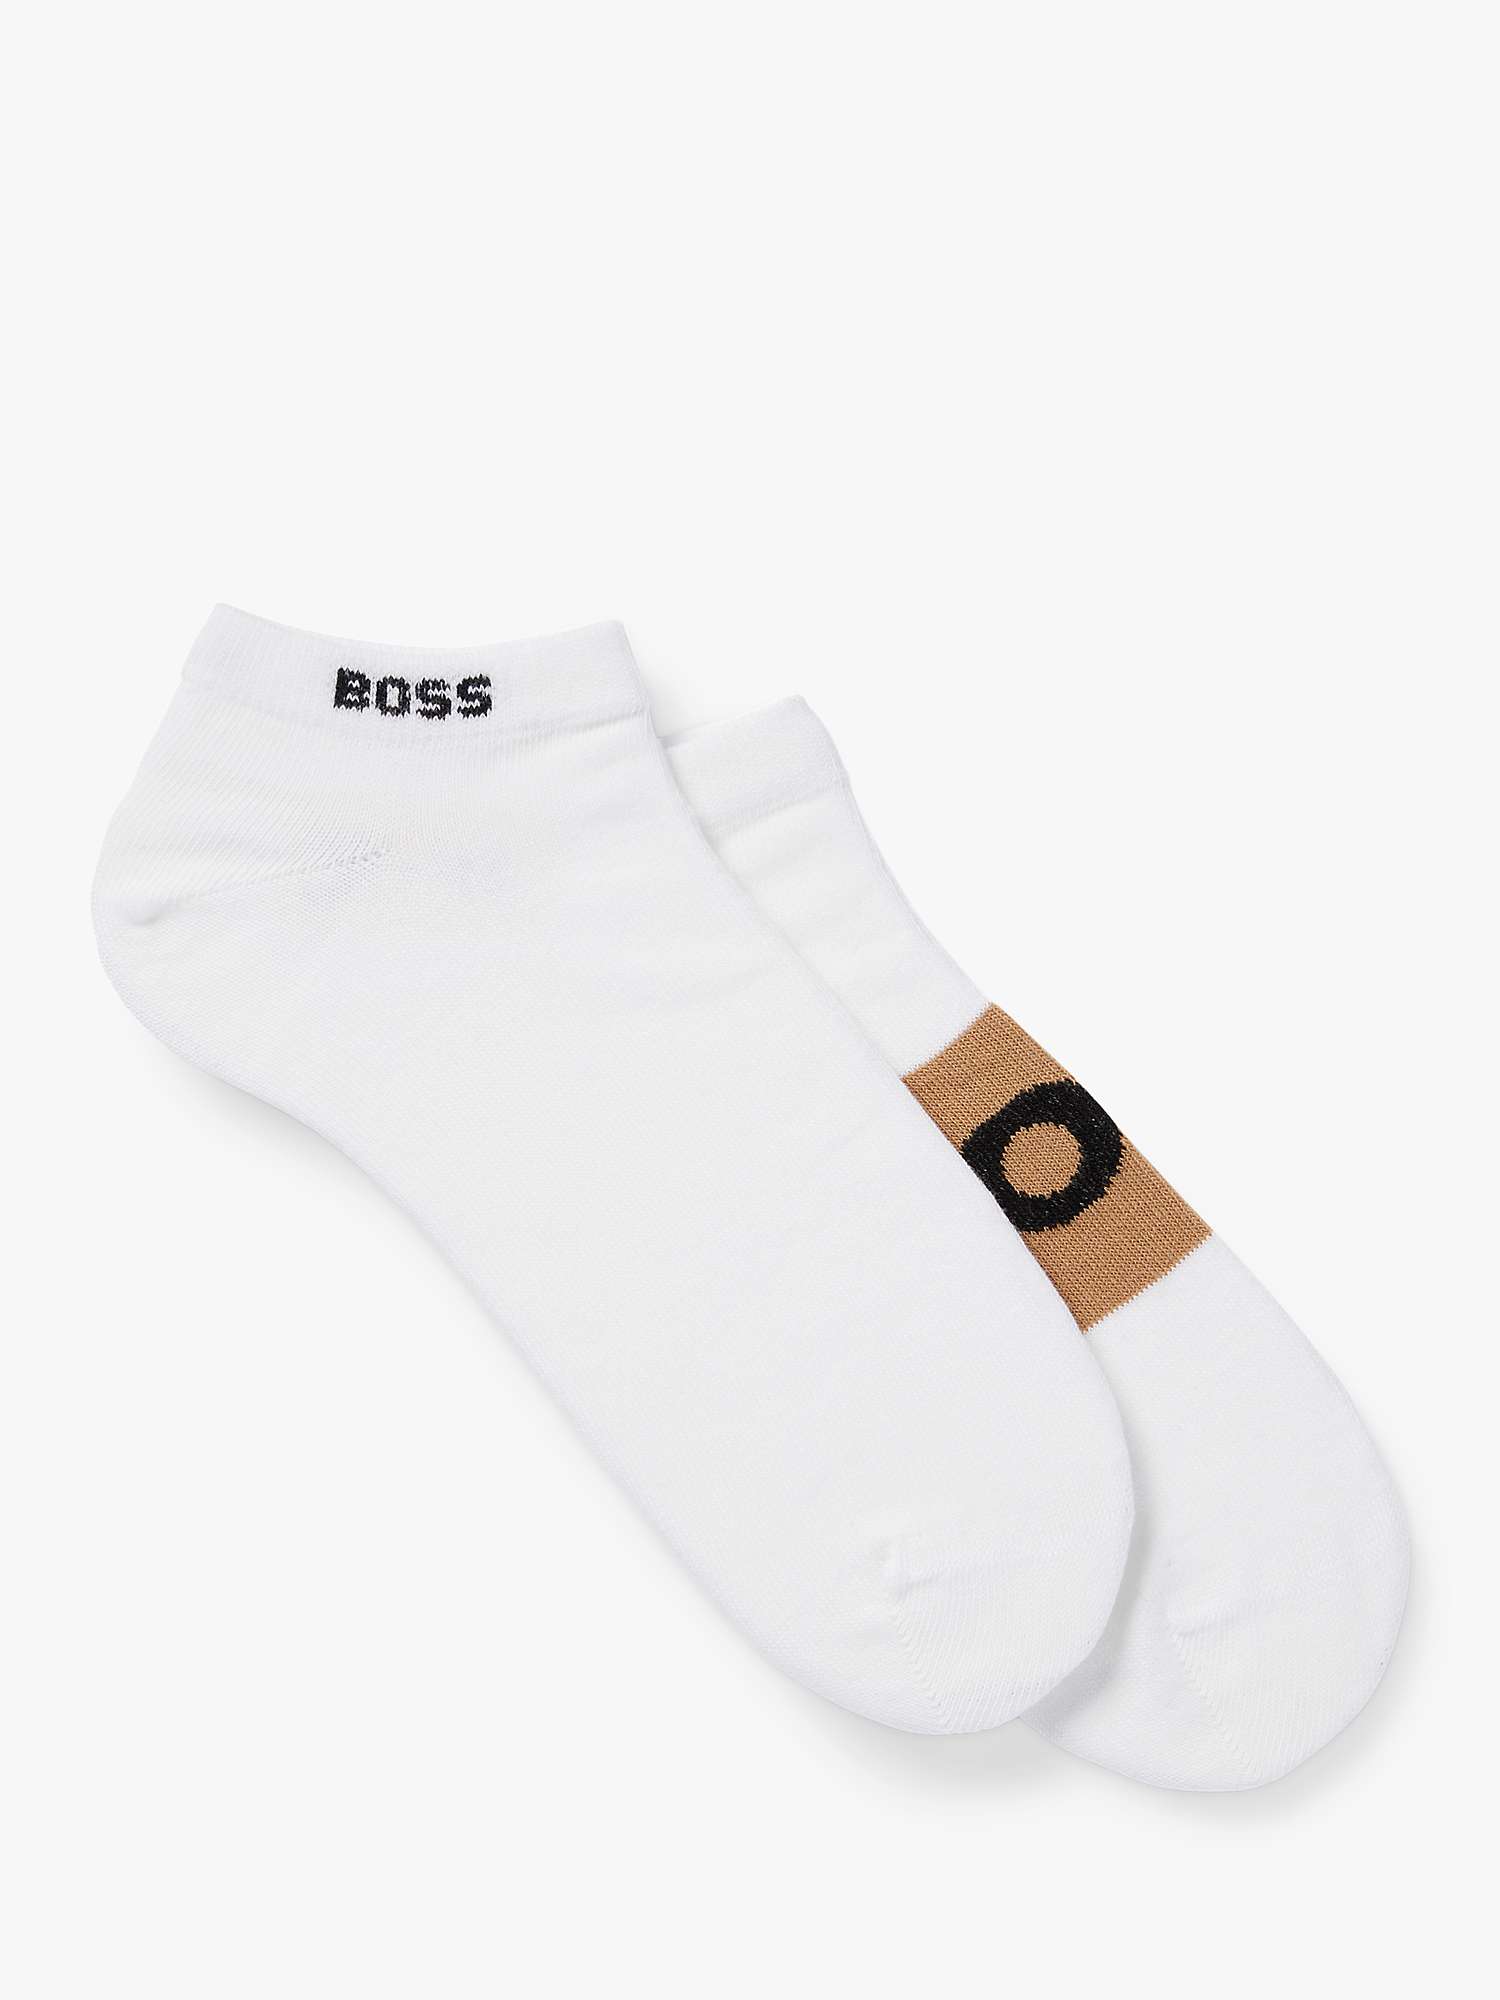 Buy BOSS Logo Trainer Socks, Pack of 2 Online at johnlewis.com